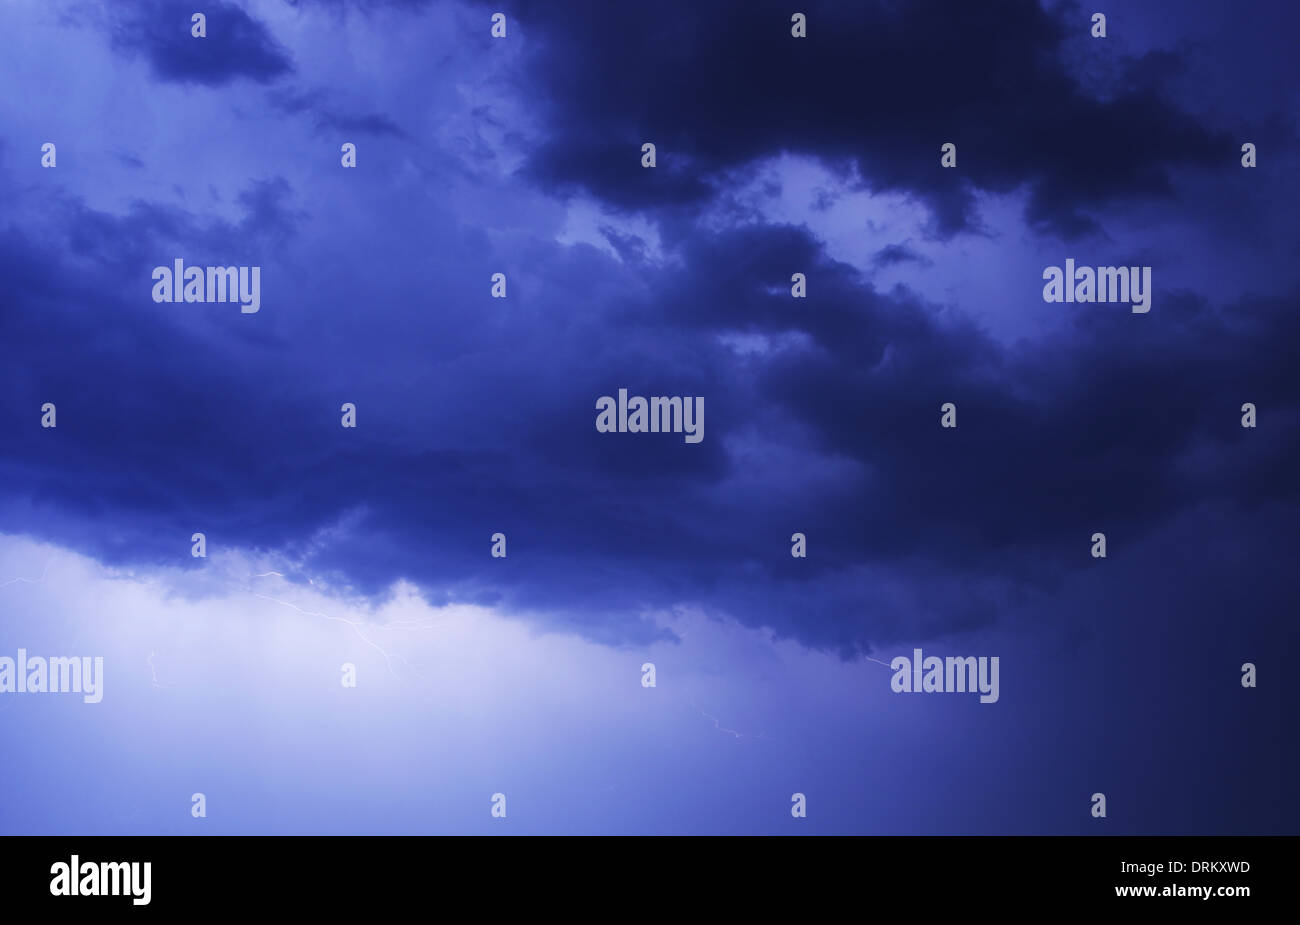 Stormy Blue Night Sky Fotohintergrund. Kleine Blitze zwischen den Wolken. Wetter-Foto-Sammlung. Stockfoto